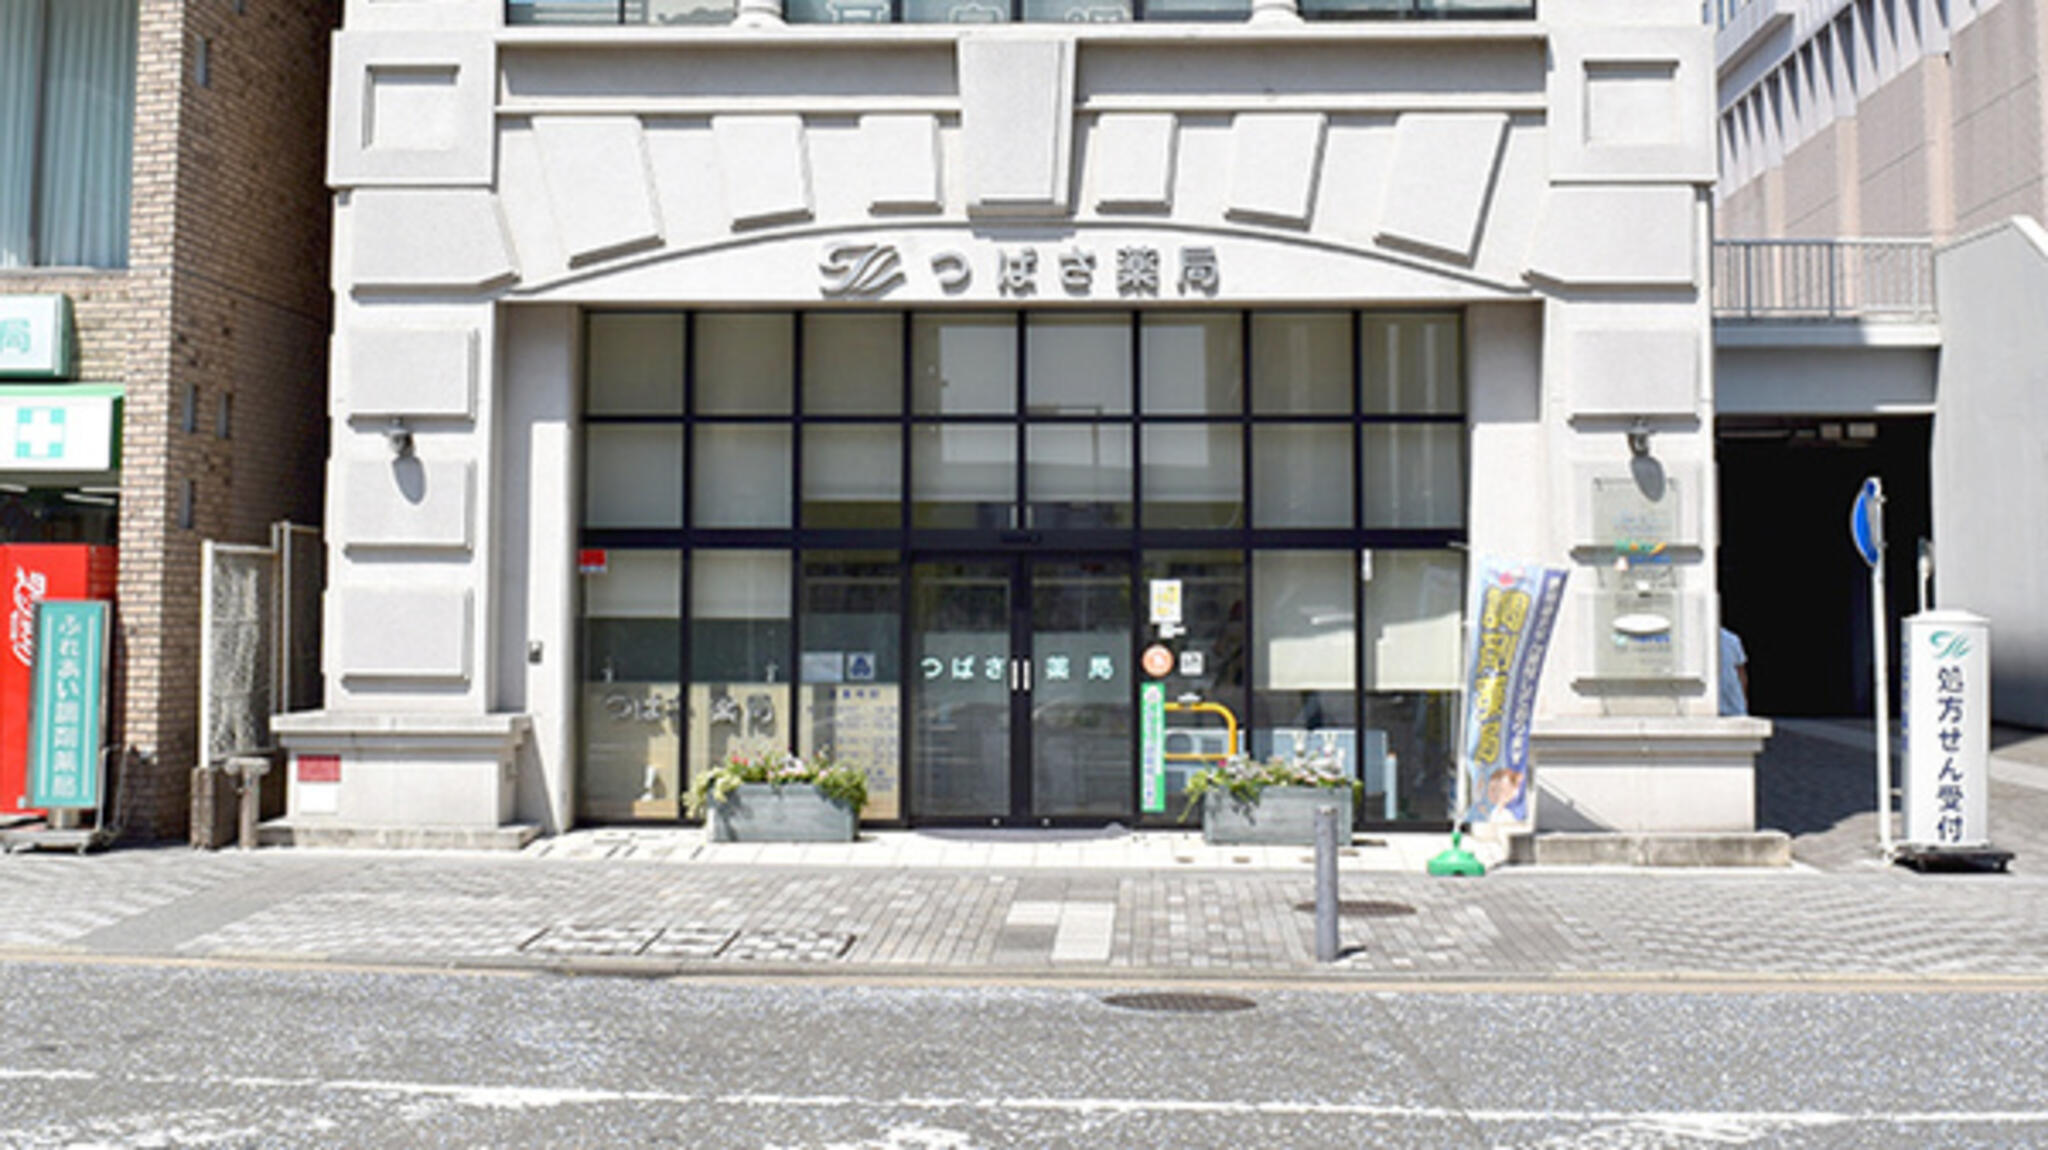 つばさ薬局 - 横浜市都筑区中川中央/調剤薬局 | Yahoo!マップ